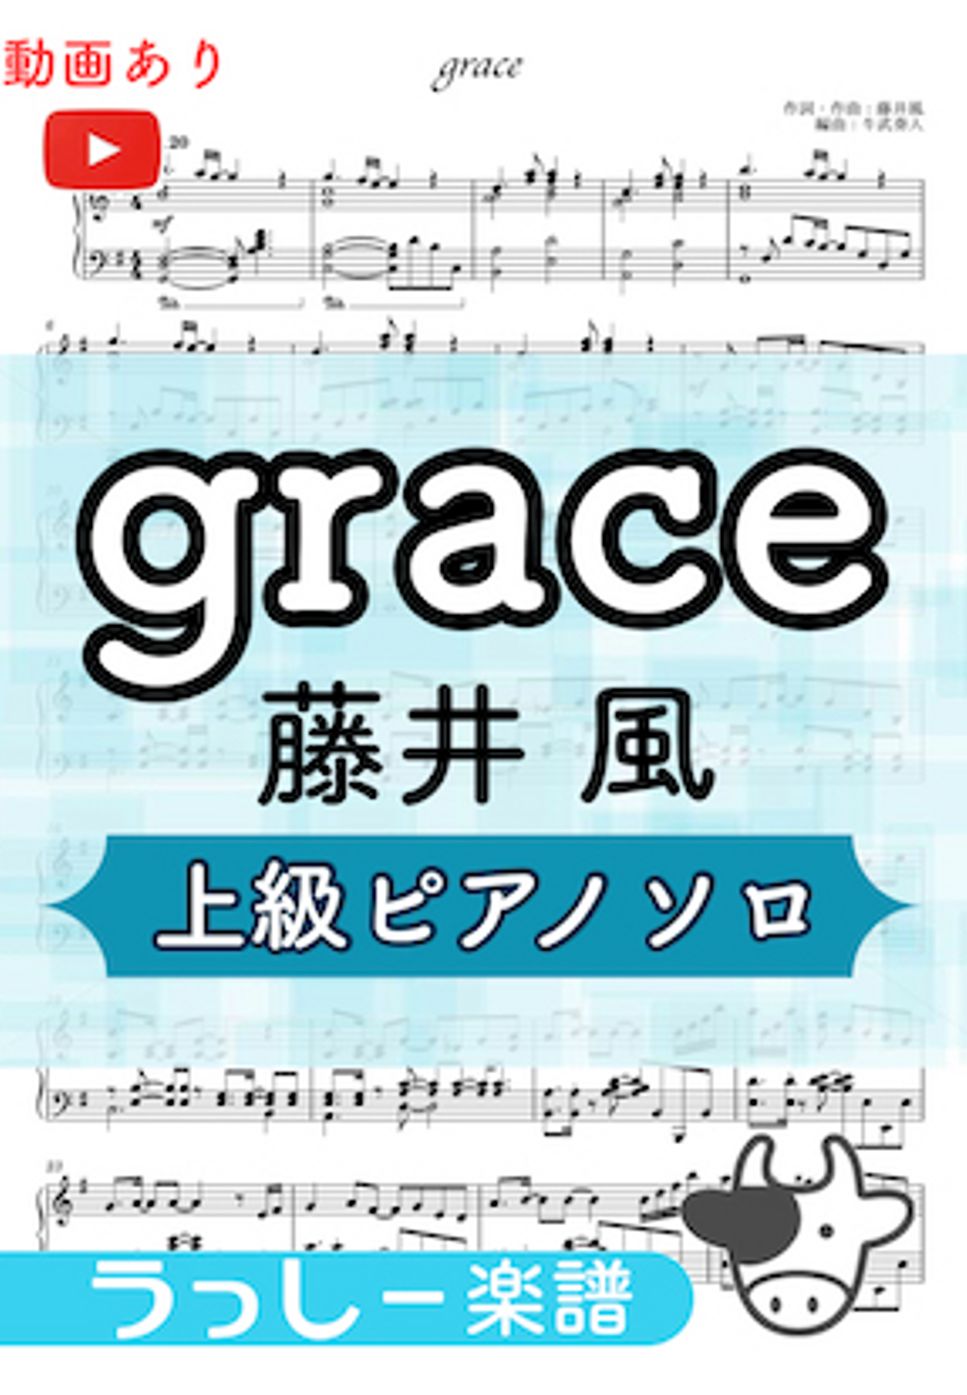 藤井風 - grace (上級ピアノ) by 牛武奏人